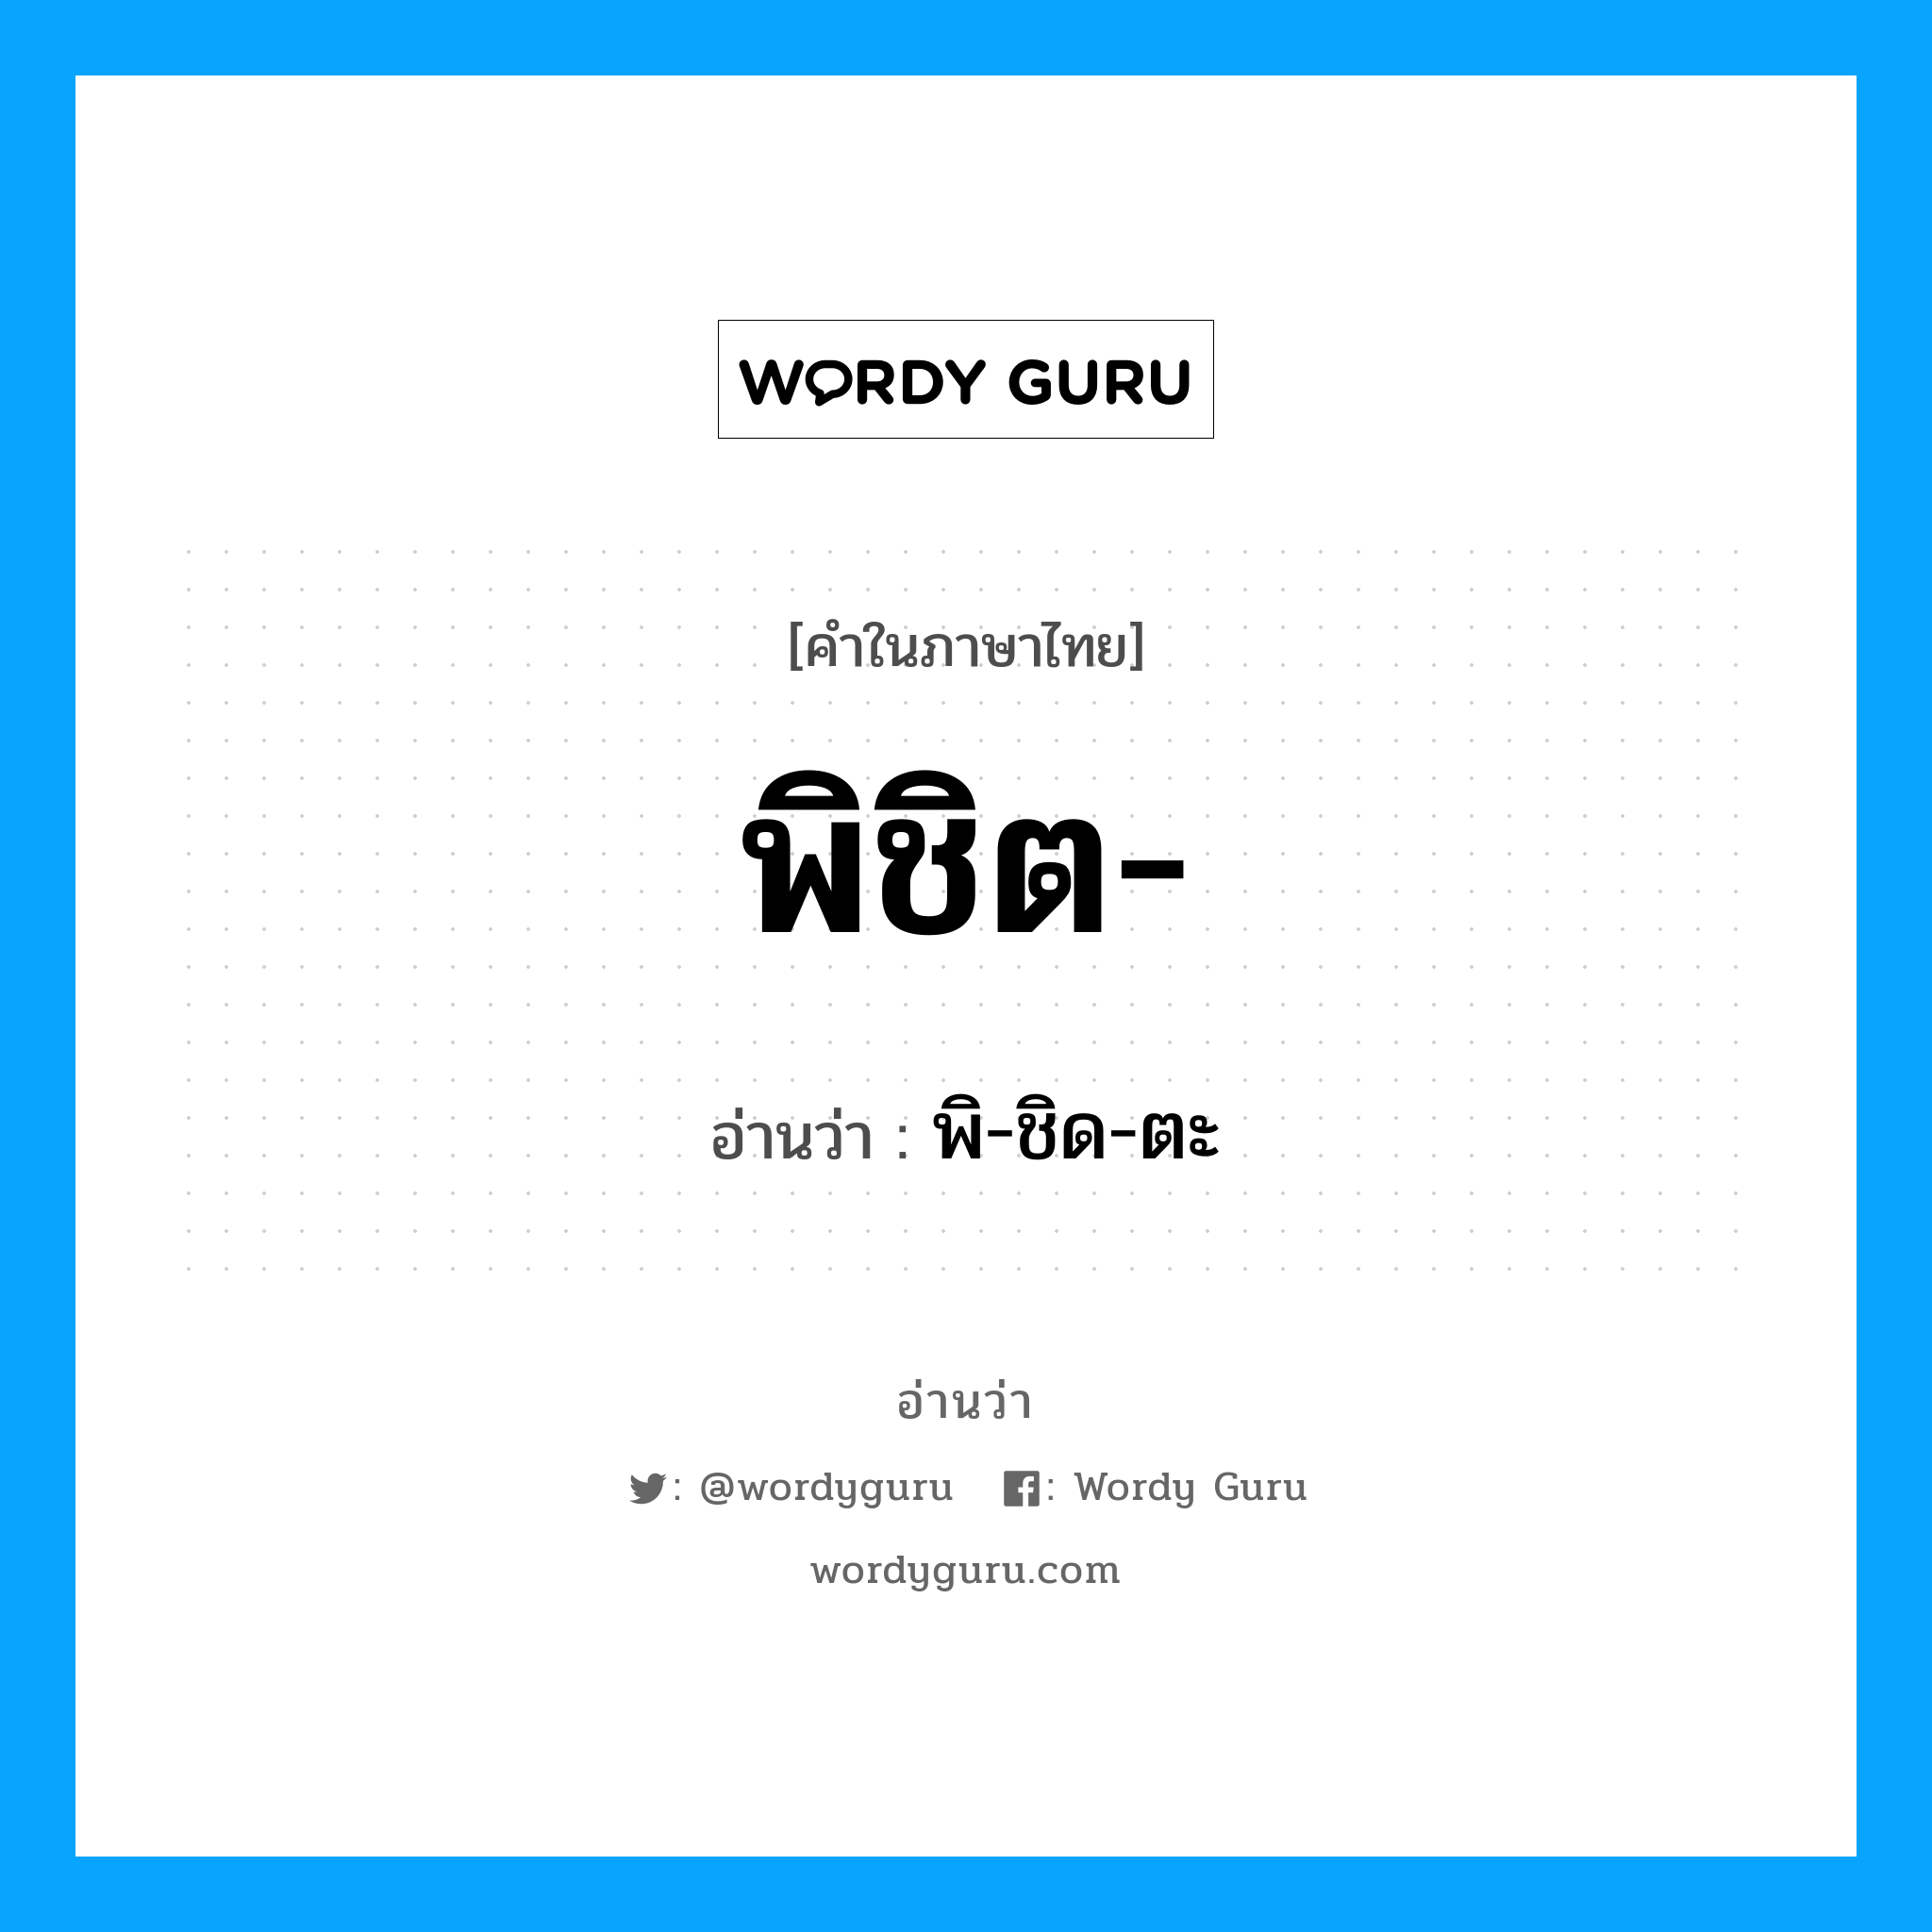 พิ-ชิด-ตะ เป็นคำอ่านของคำไหน?, คำในภาษาไทย พิ-ชิด-ตะ อ่านว่า พิชิต-